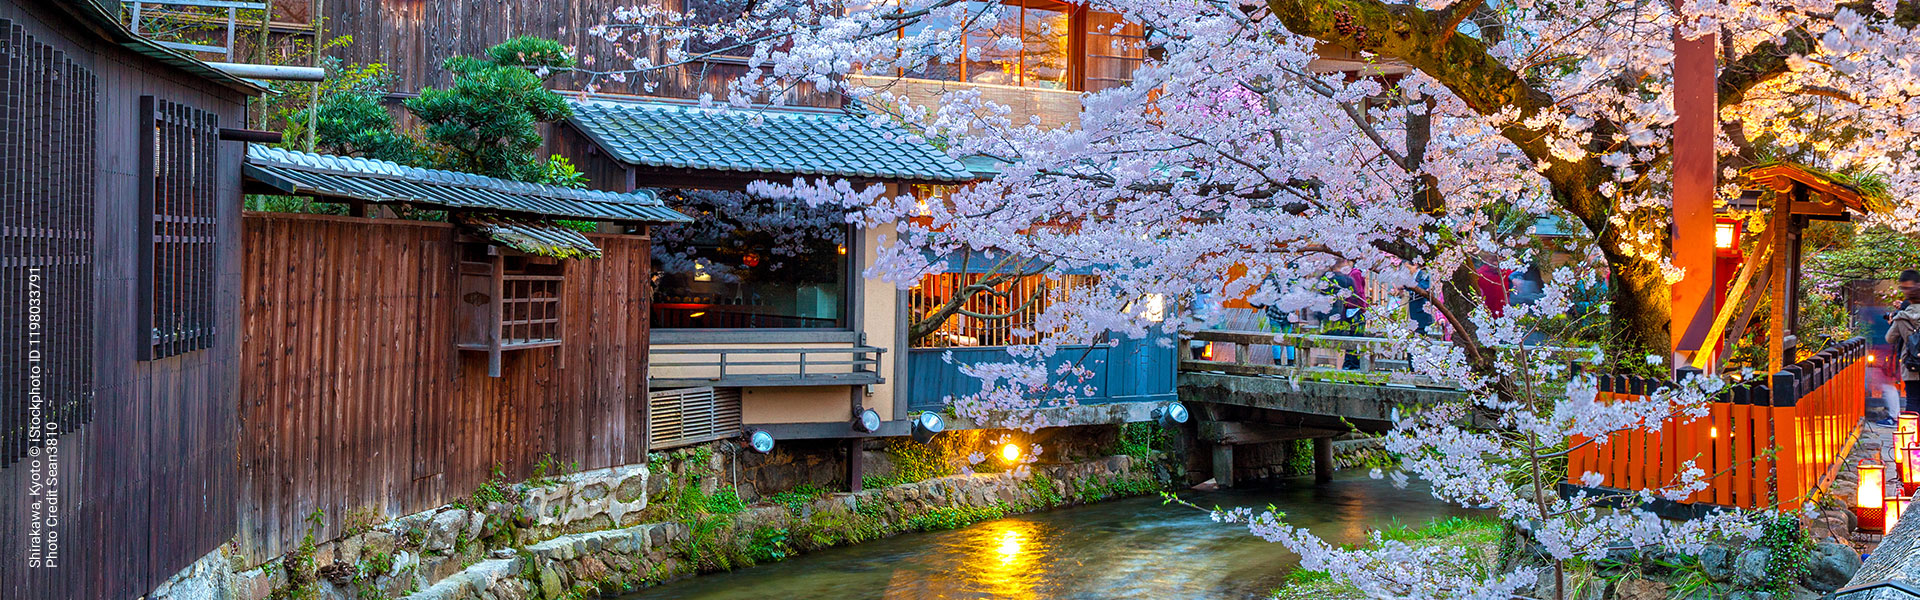 Shirakawa, Kyoto © iStockphoto ID 1198033791, Photo Credit Sean3810